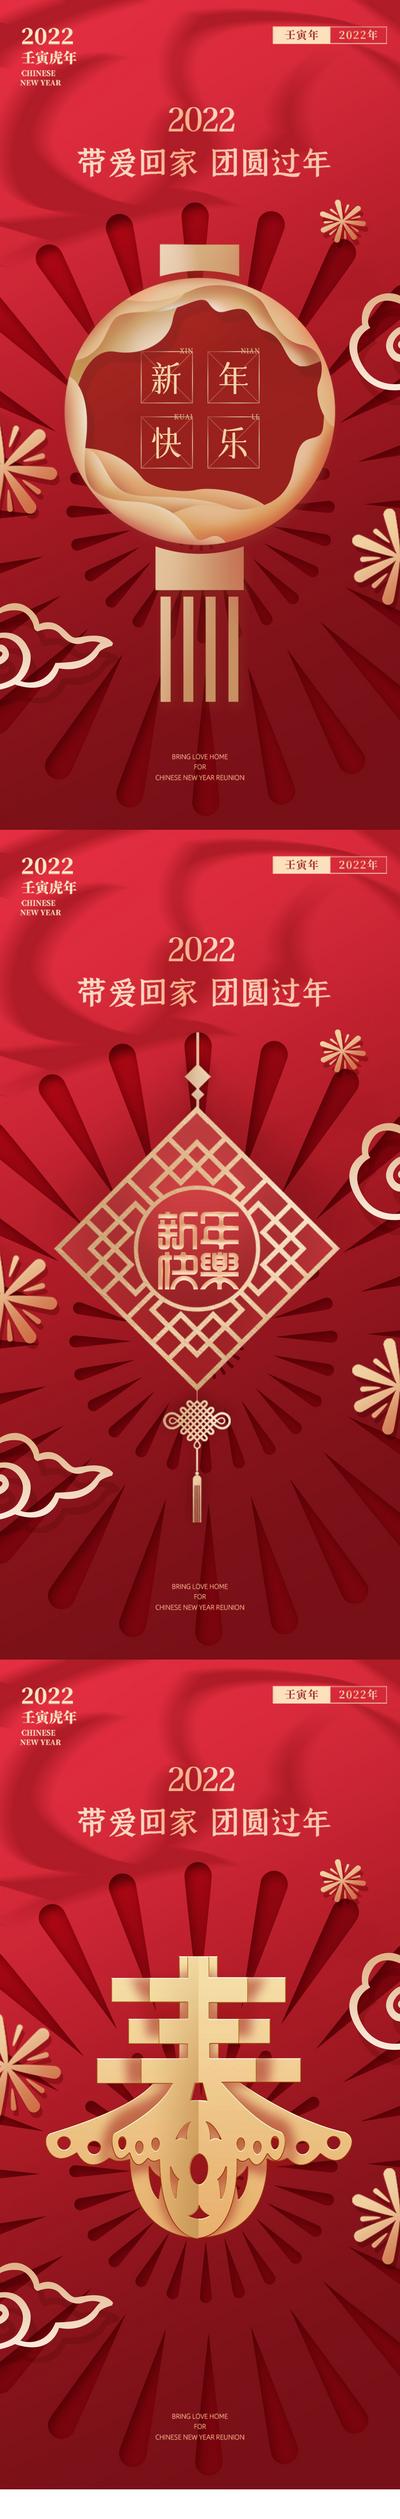 南门网 海报 中国传统节日 新年 春节 除夕 初一 灯笼 中国结 祥云 烟花